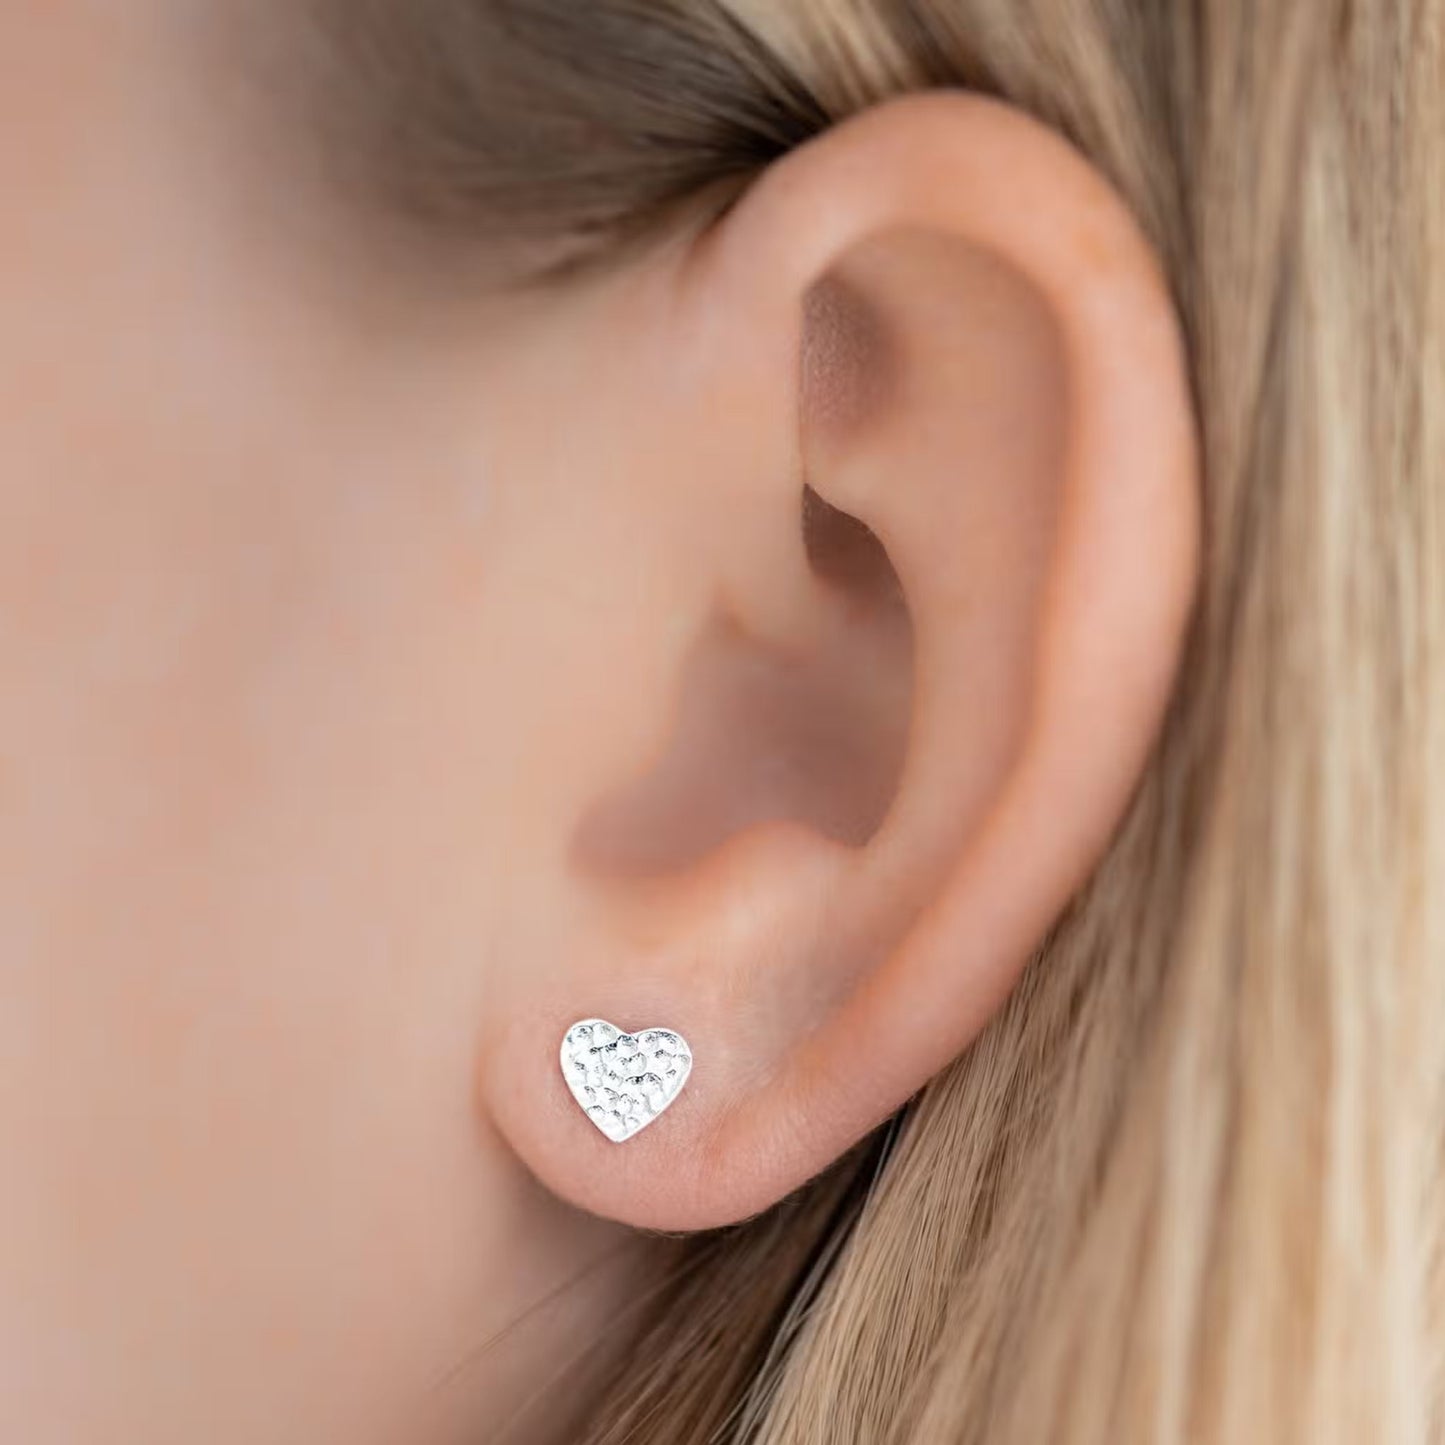 Heart Sterling Silver Earrings - The Little Jewellery Company